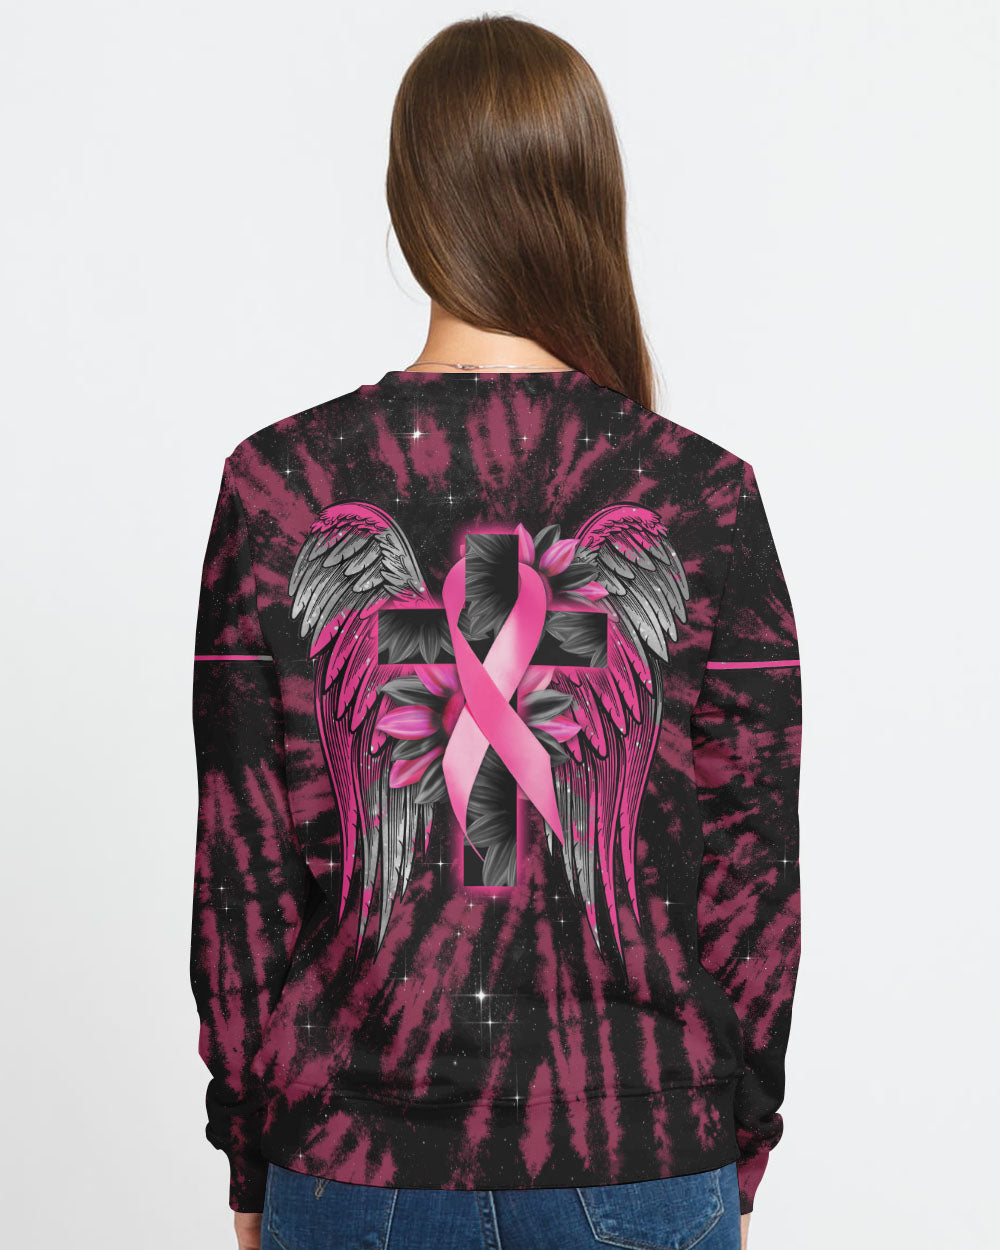 Cross Wing Sunflower Tie Dye Pink Ribbon Women's Breast Cancer Awareness Sweatshirt